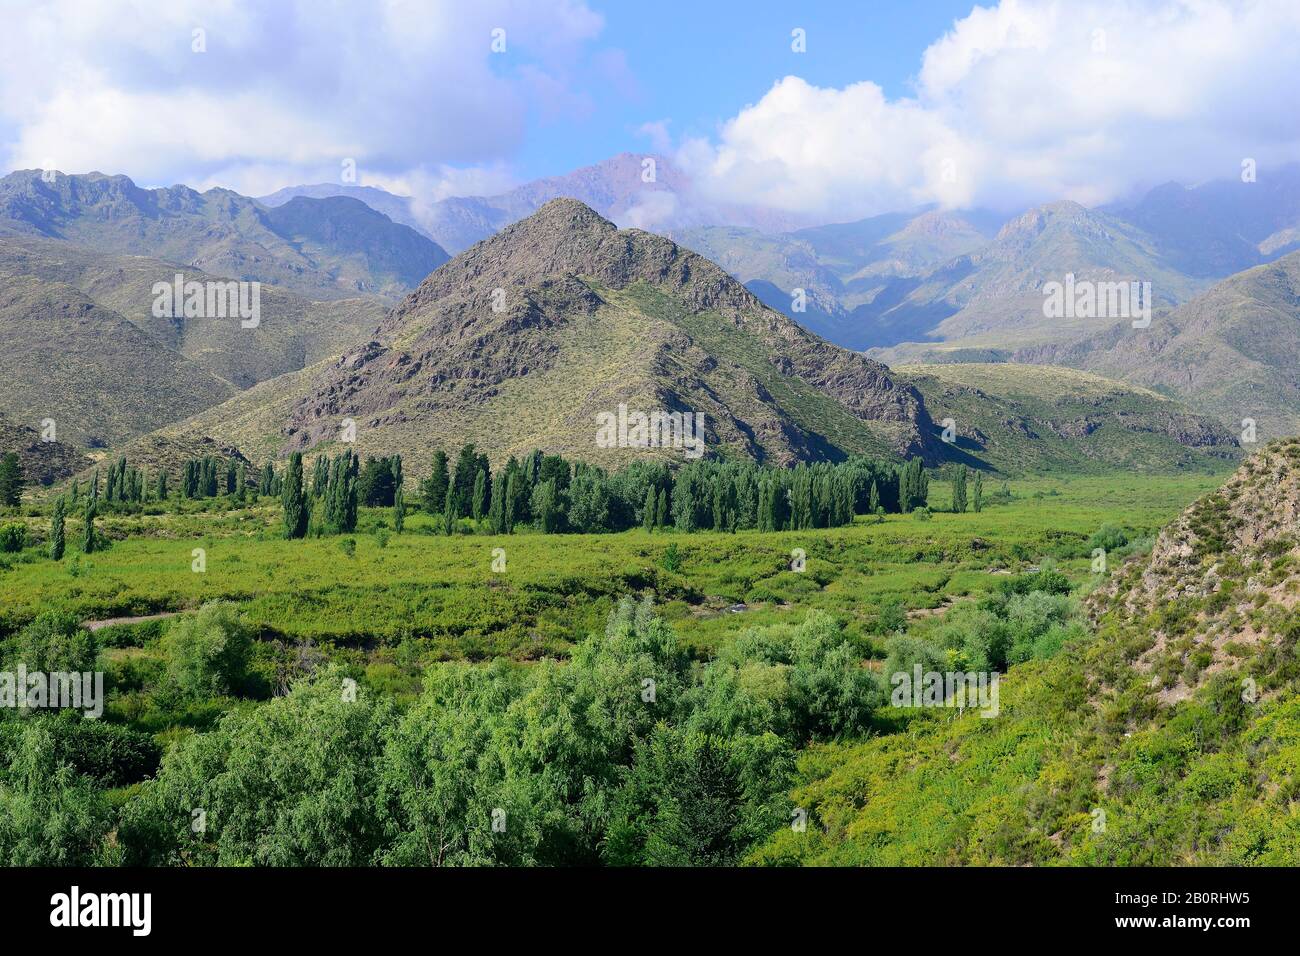 Landscape in Valle de Uco, near Manzano Historico, Province of Mendoza, Argentina Stock Photo